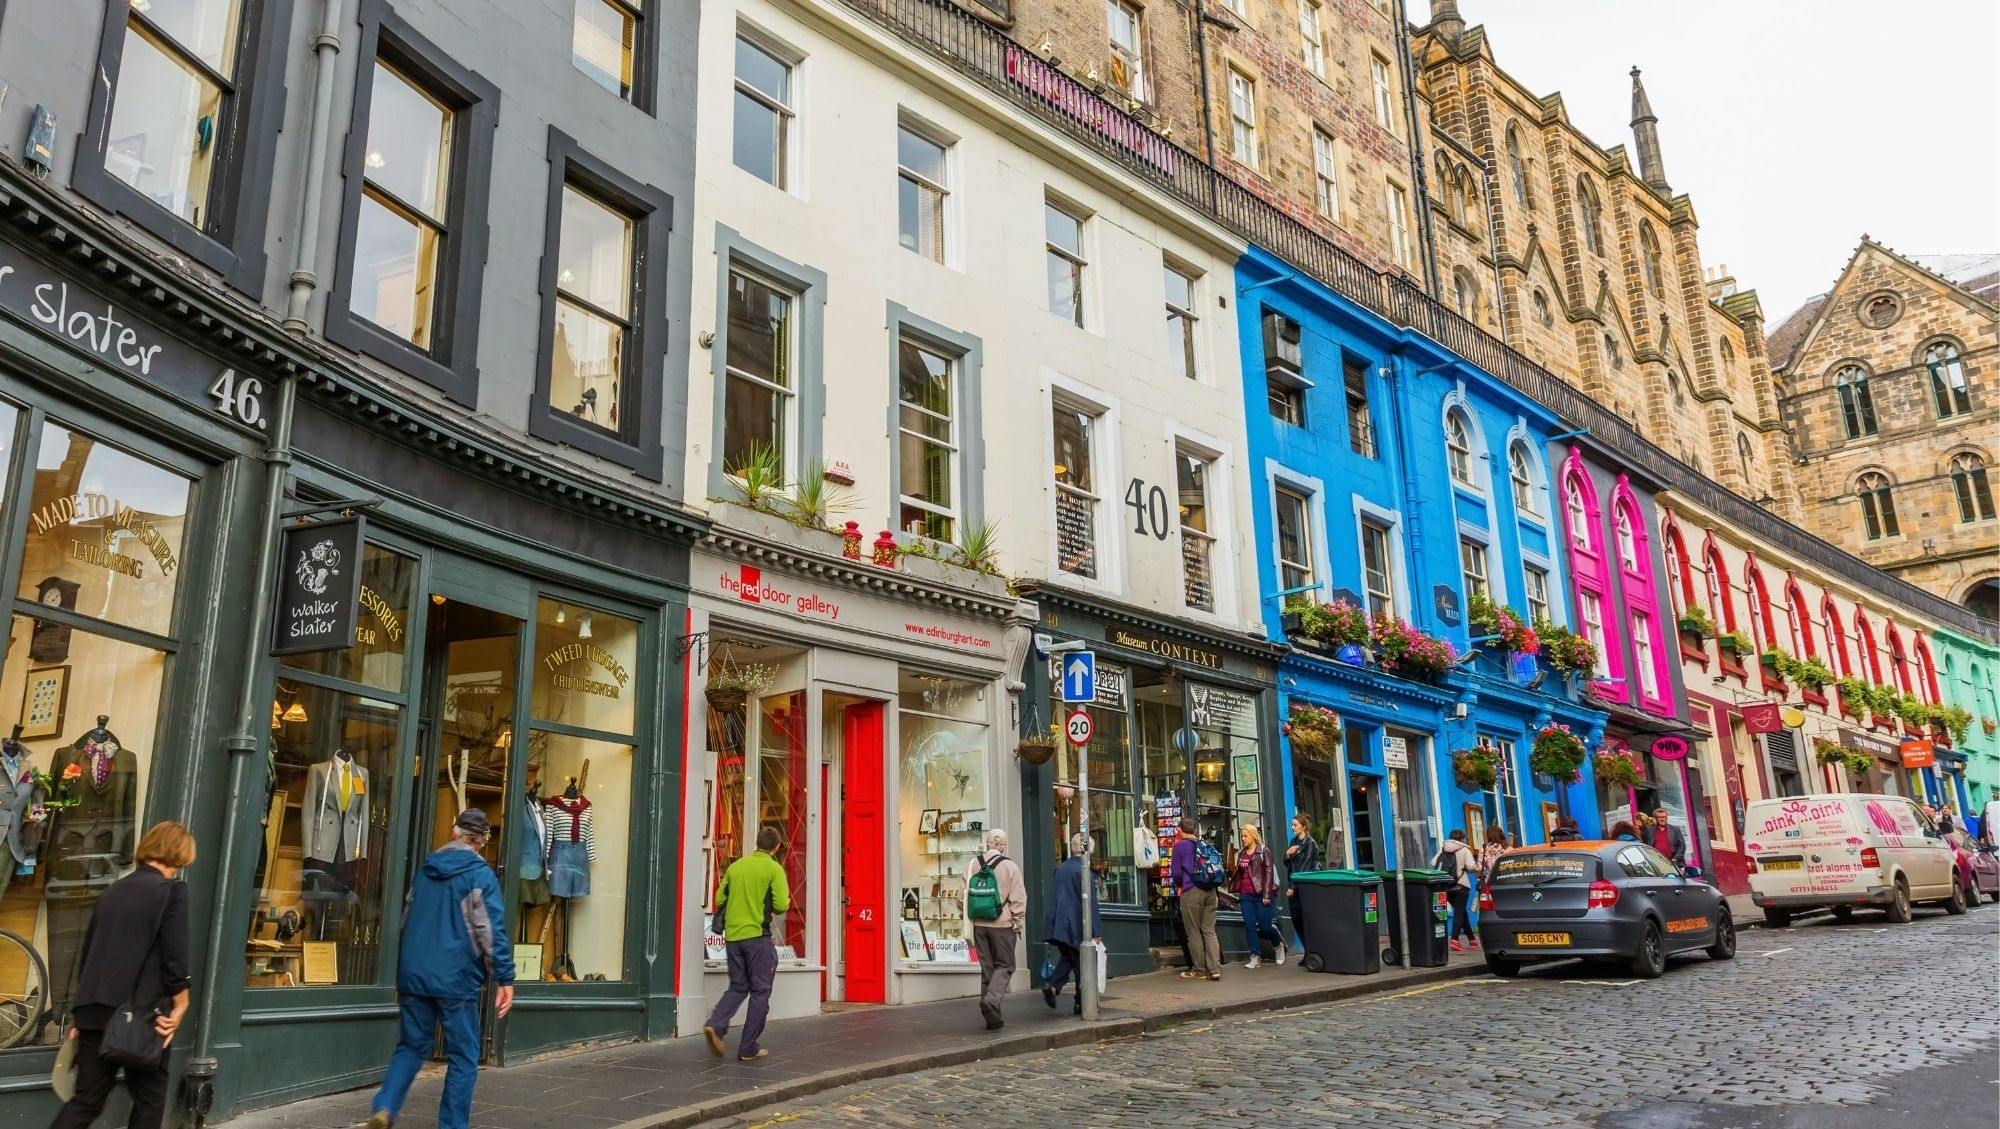 Secrets of Edinburgh guided tour